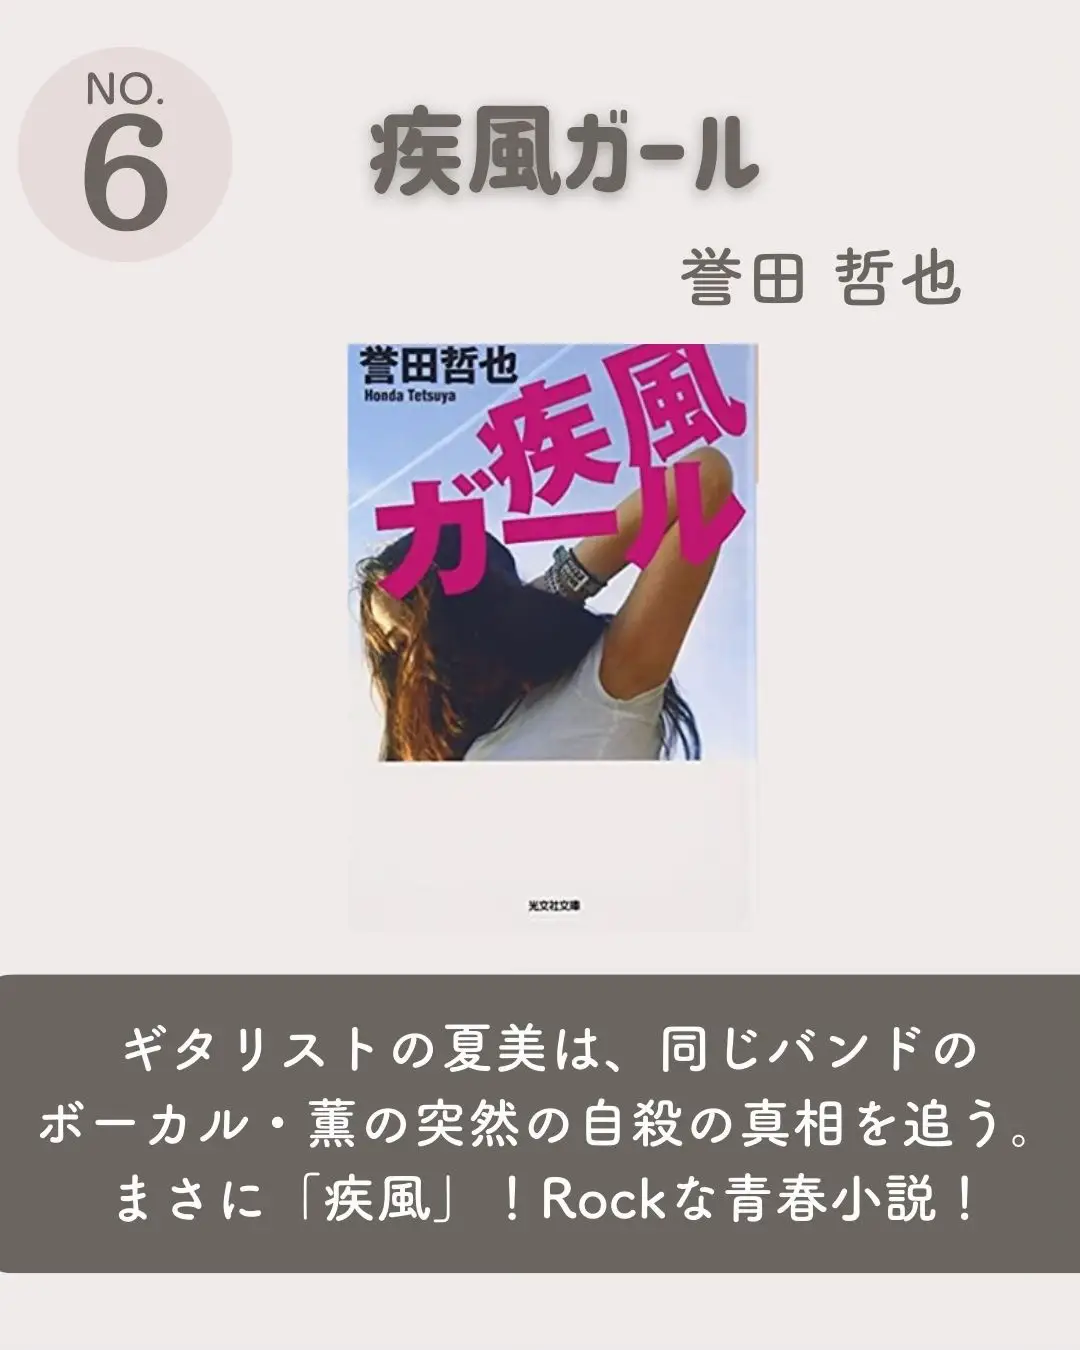 Book Publicity - Lemon8検索